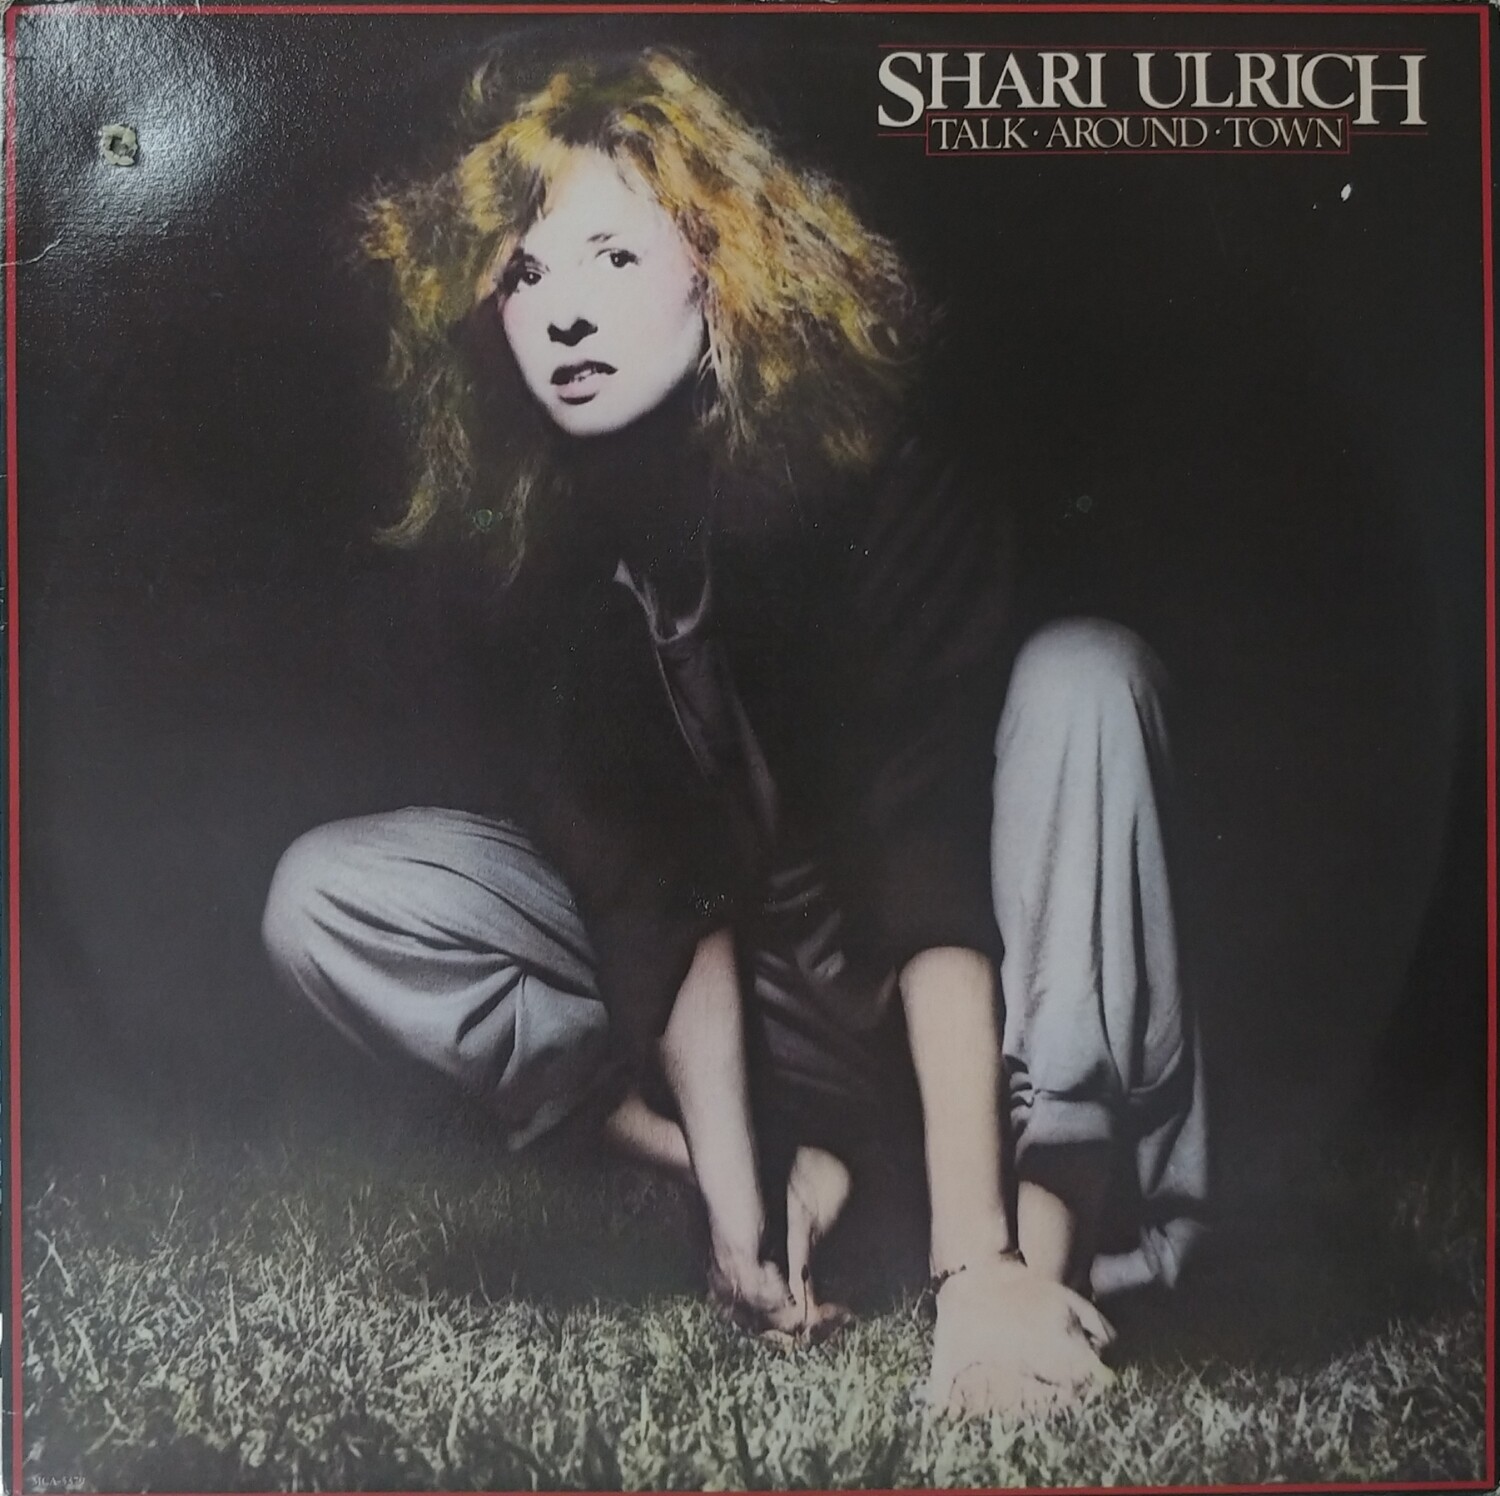 Shari Ulrich - Talk around town